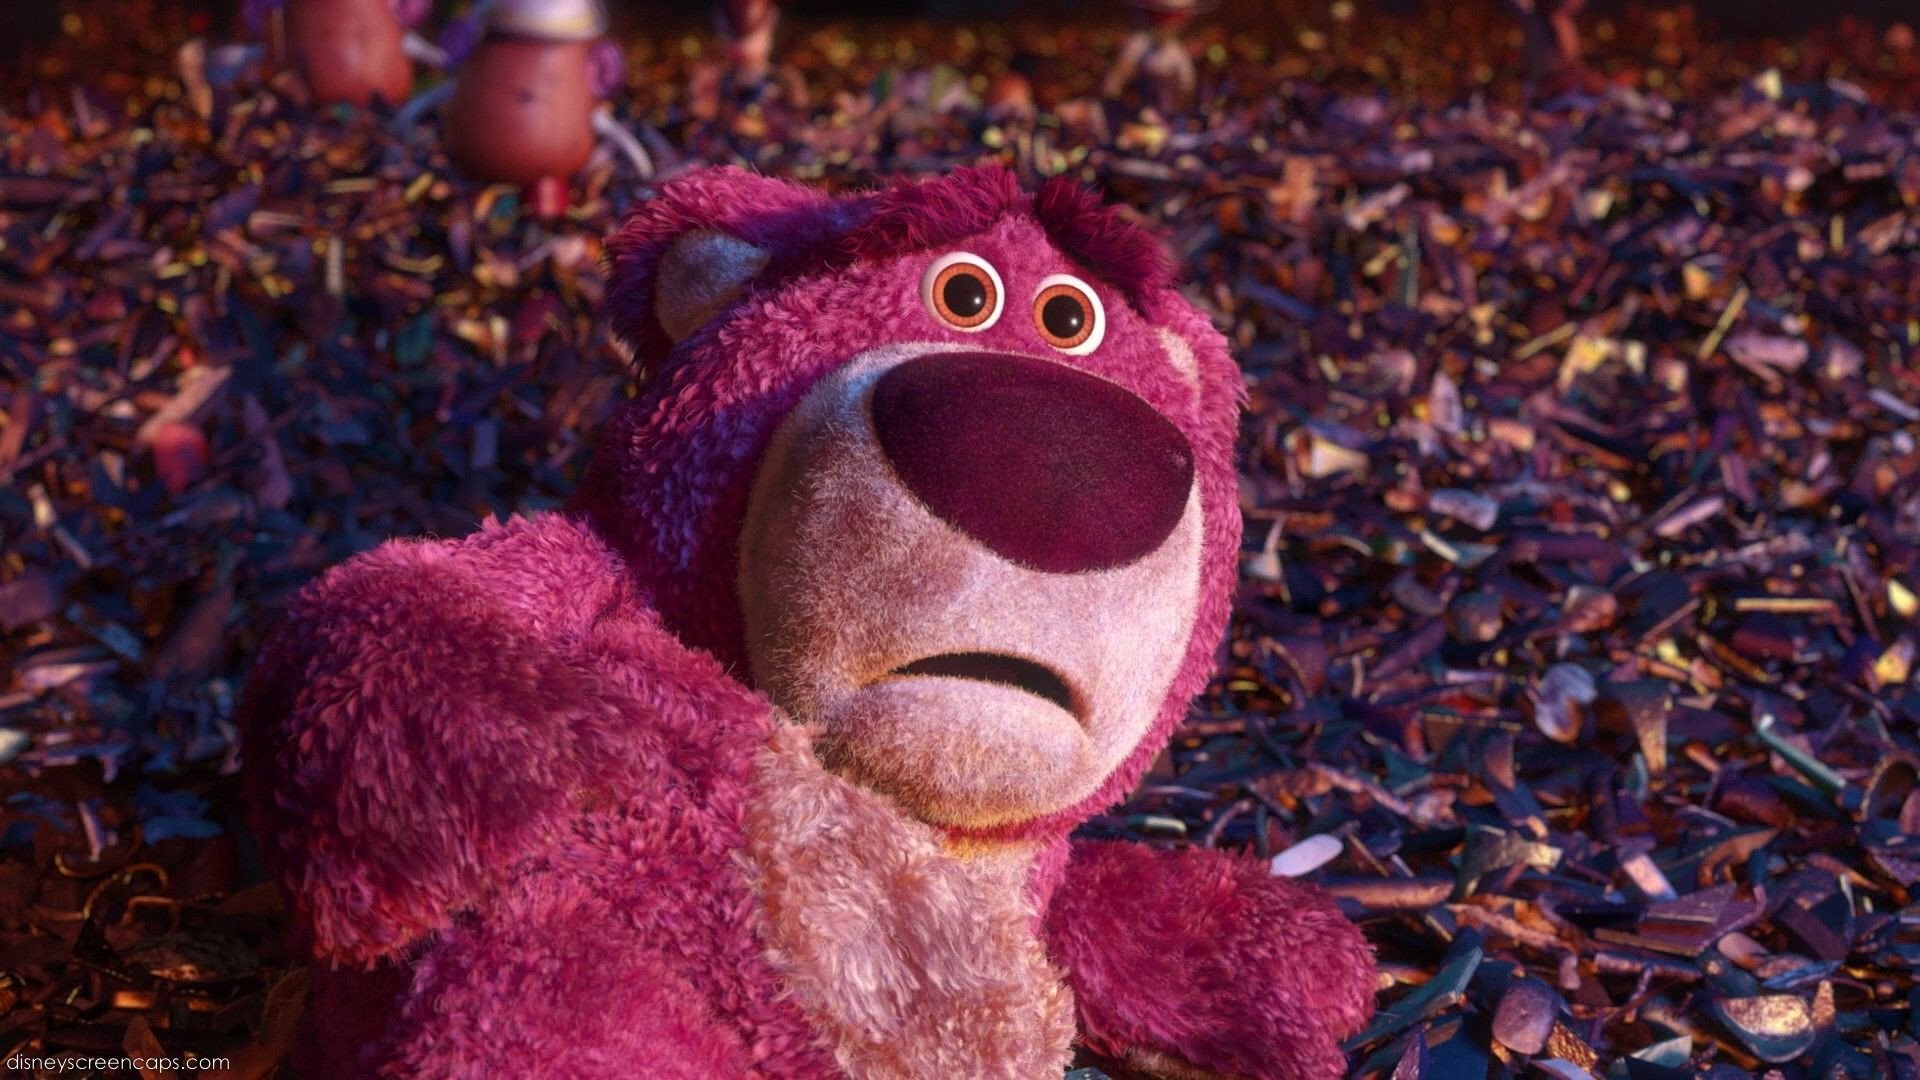 Gấu dâu là nhân vật trong bộ phim hoạt hình Toy Story 3